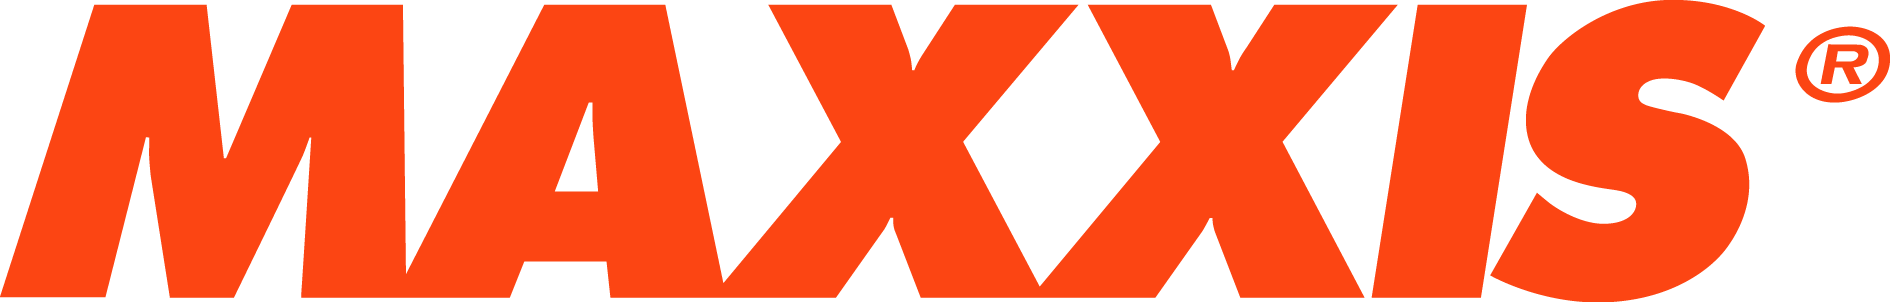 maxxis_word_orange